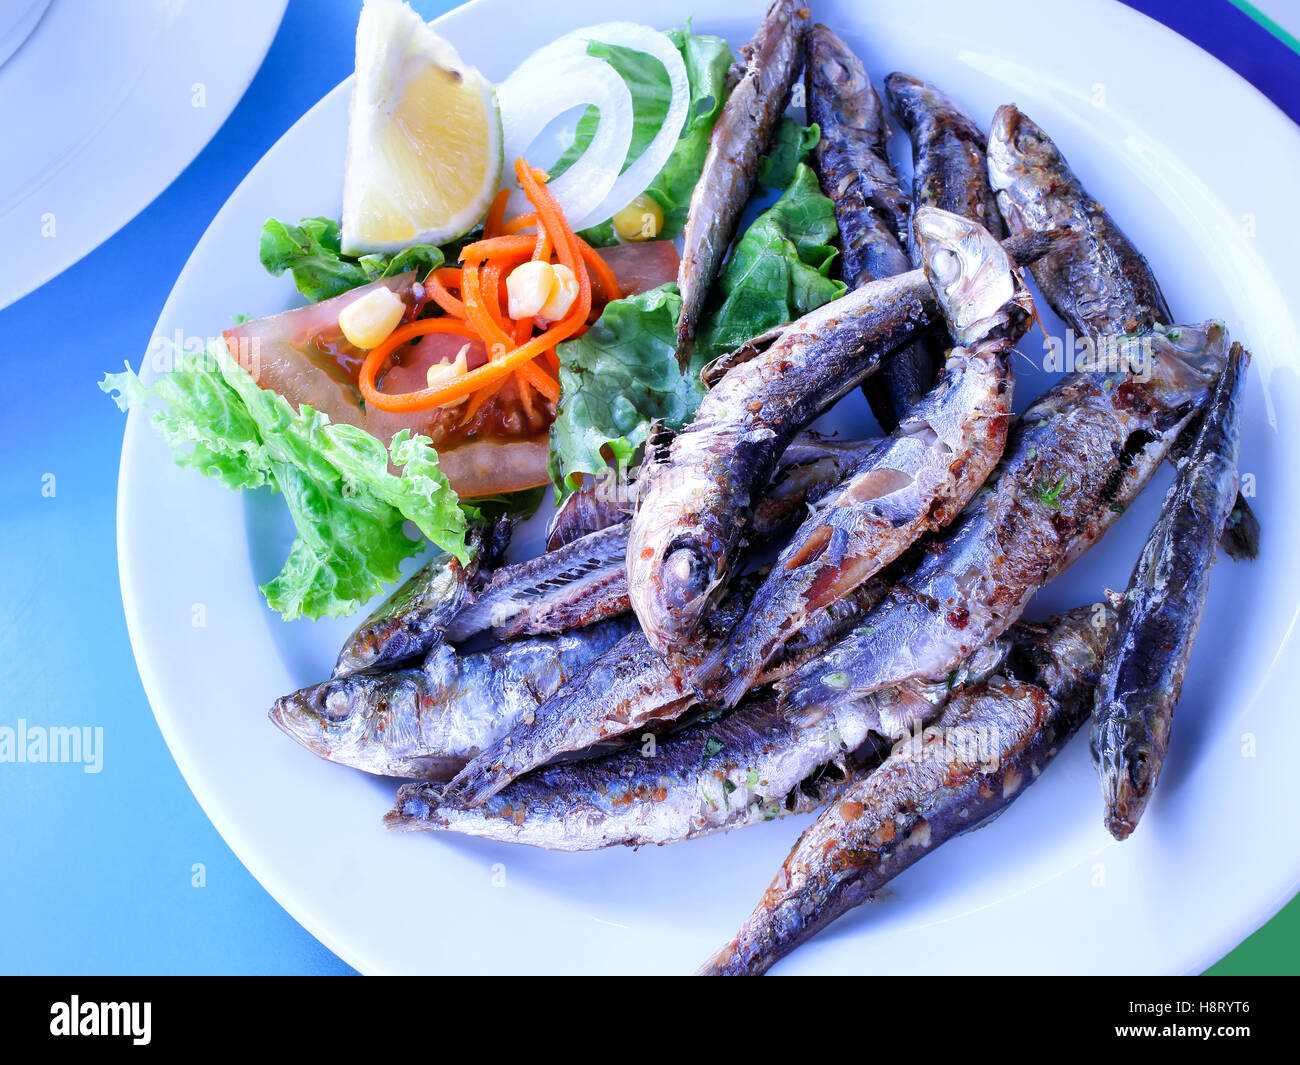 Assiette de sardines grillées servies avec salade, tomate, oignon et tranche de citron Banque D'Images